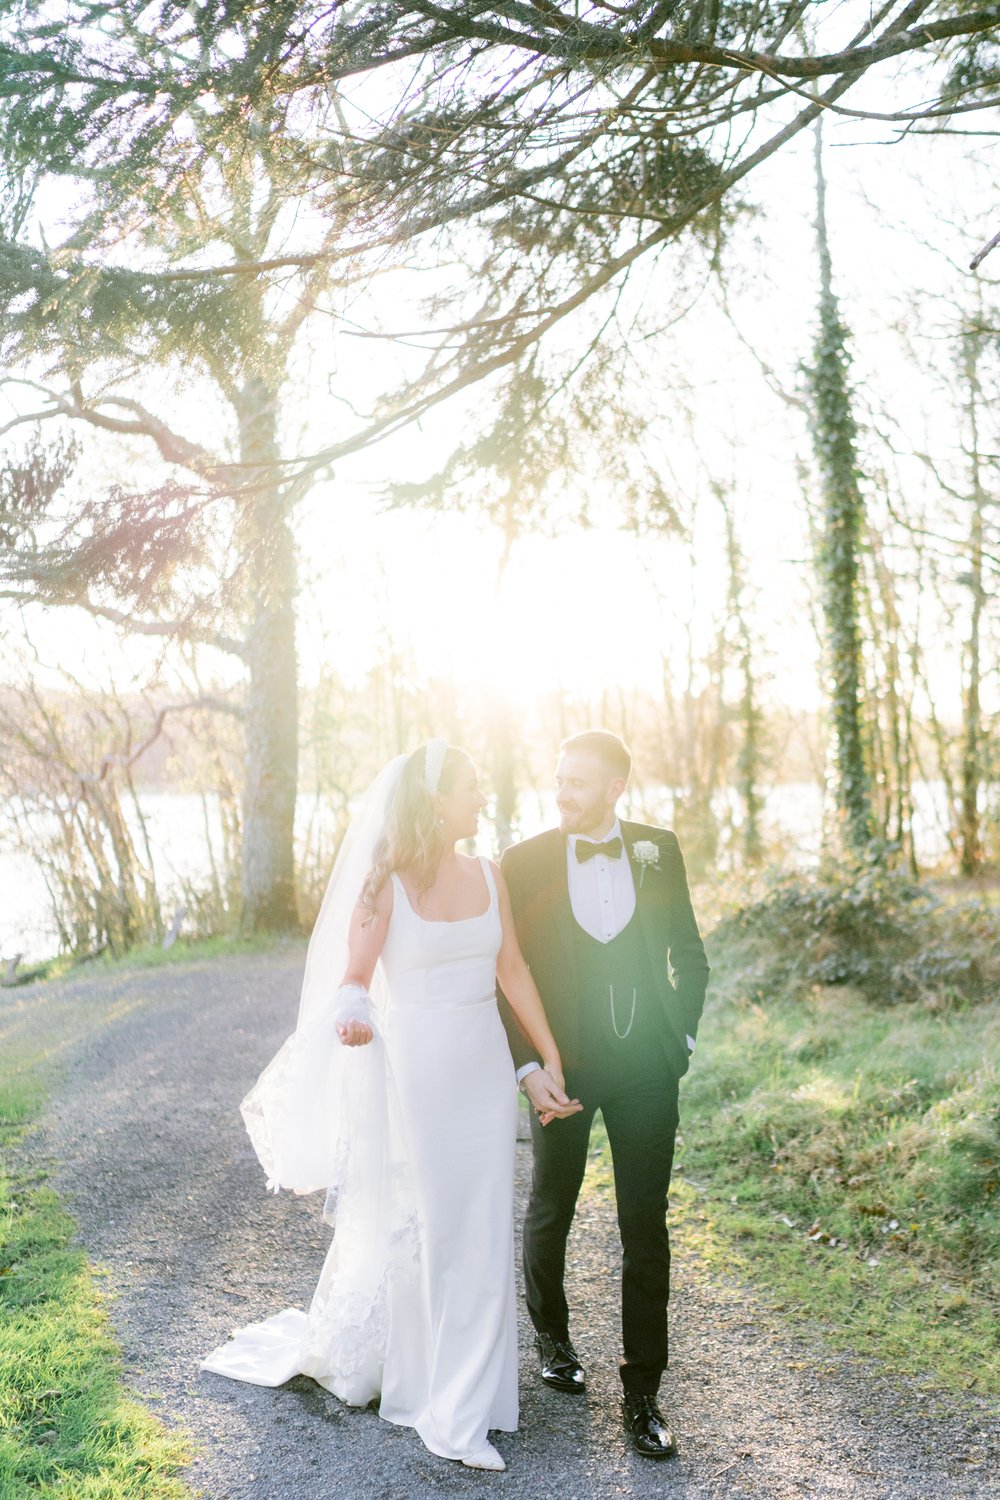 Lough Rynn wedding, wedding photographer Ireland, black tie wedding, Castle wedding Ireland,-62.jpg